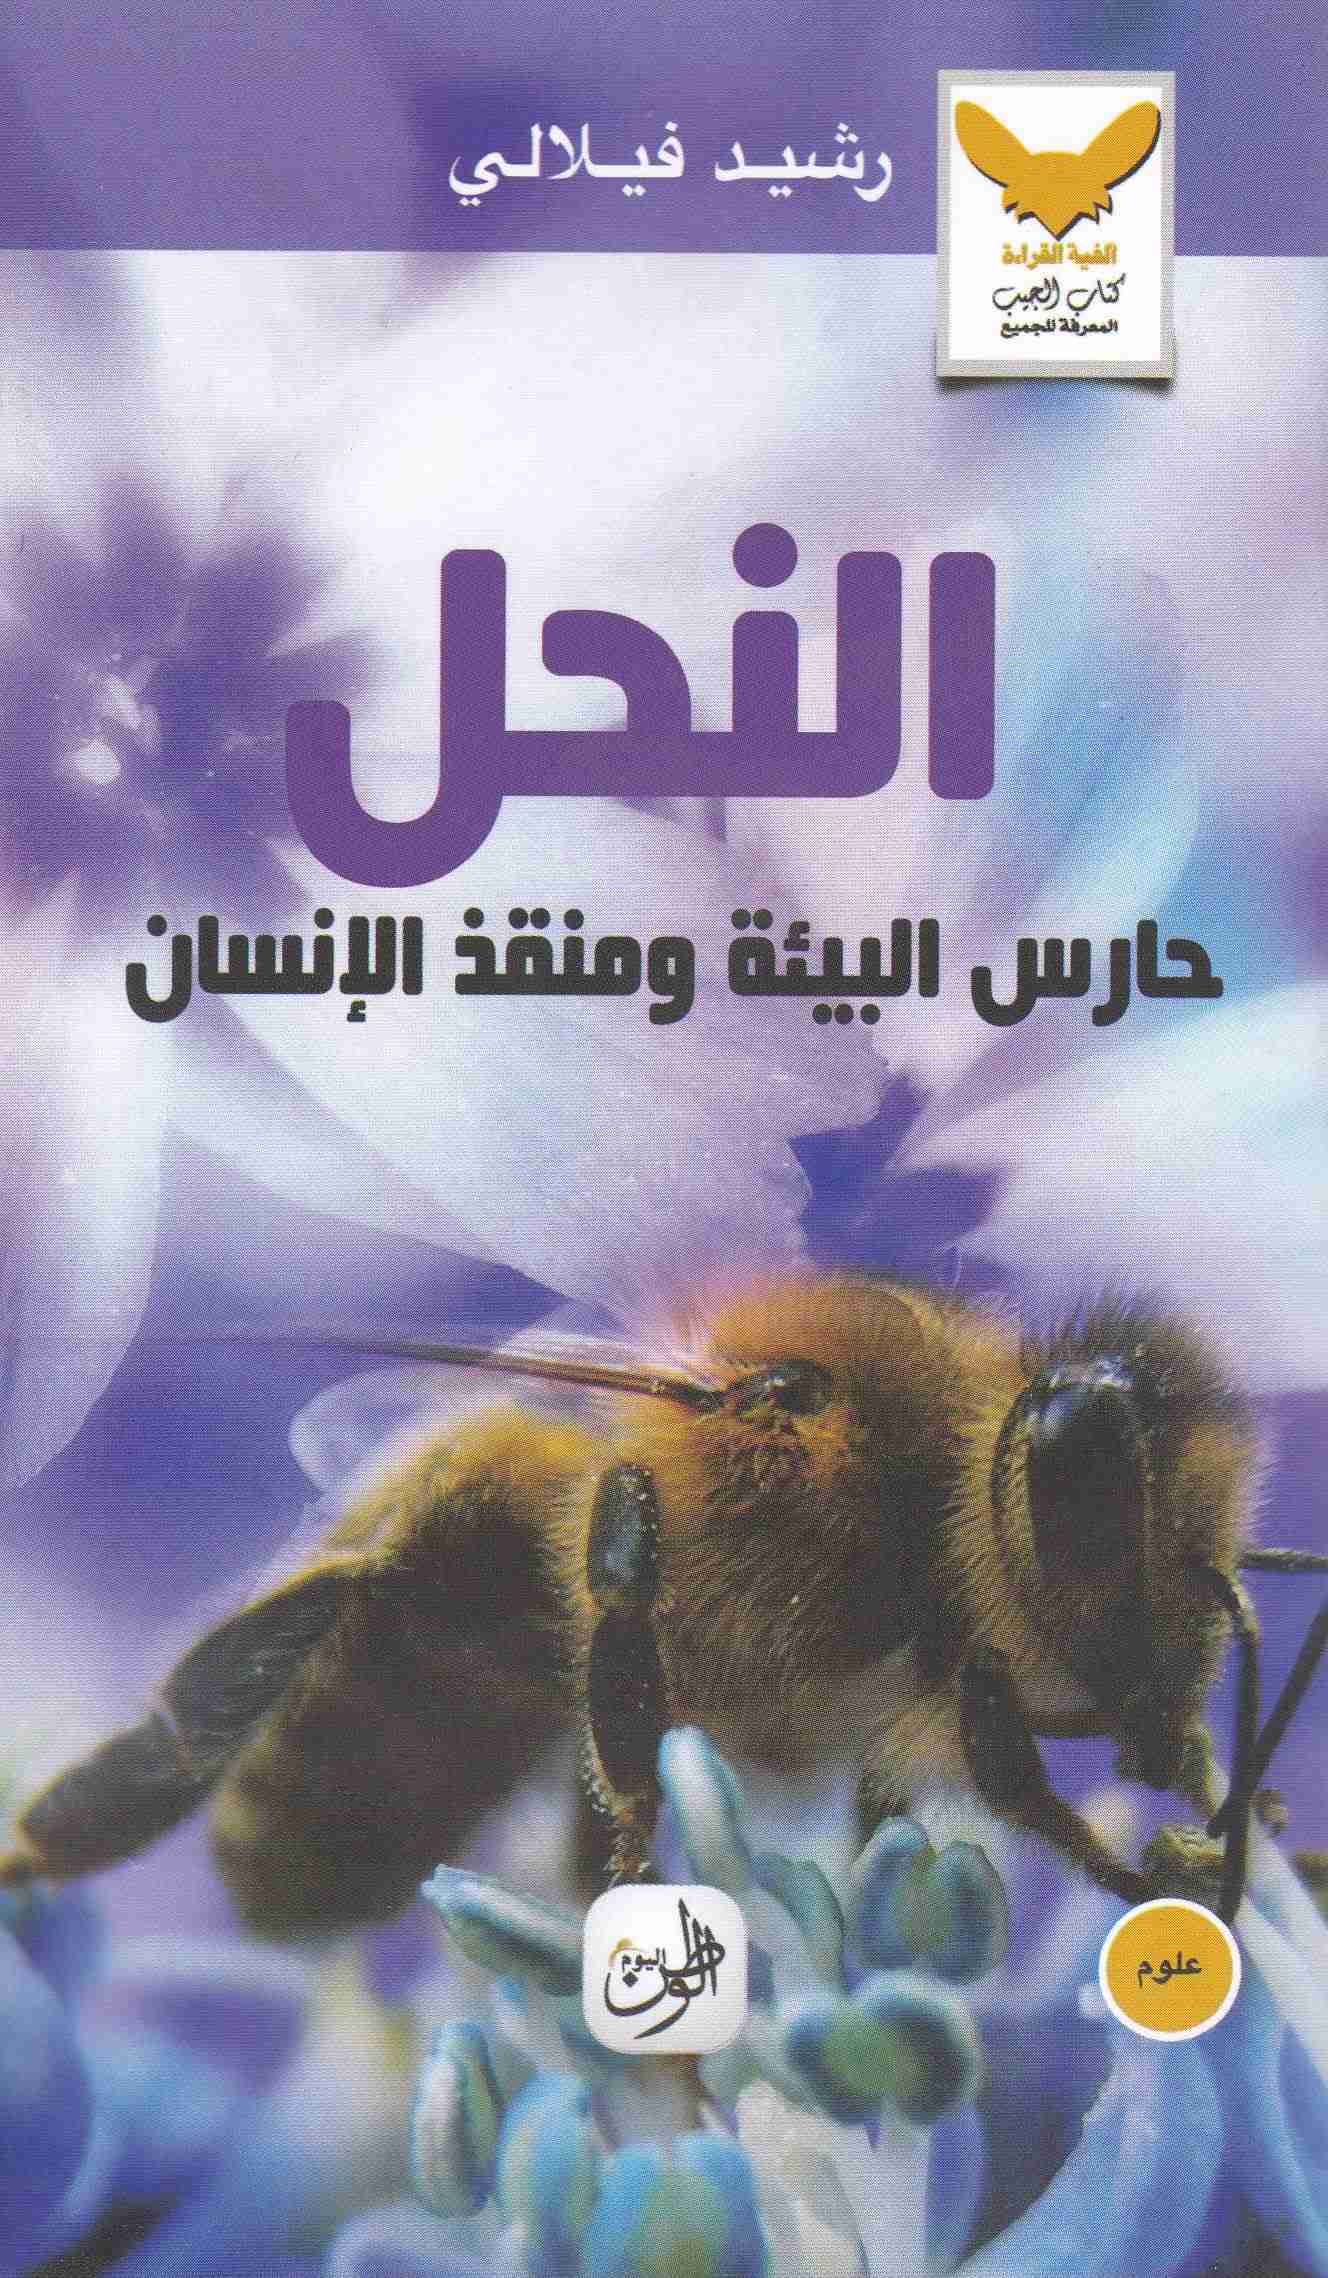 النحل حارس البيئة و منقد الإنسان